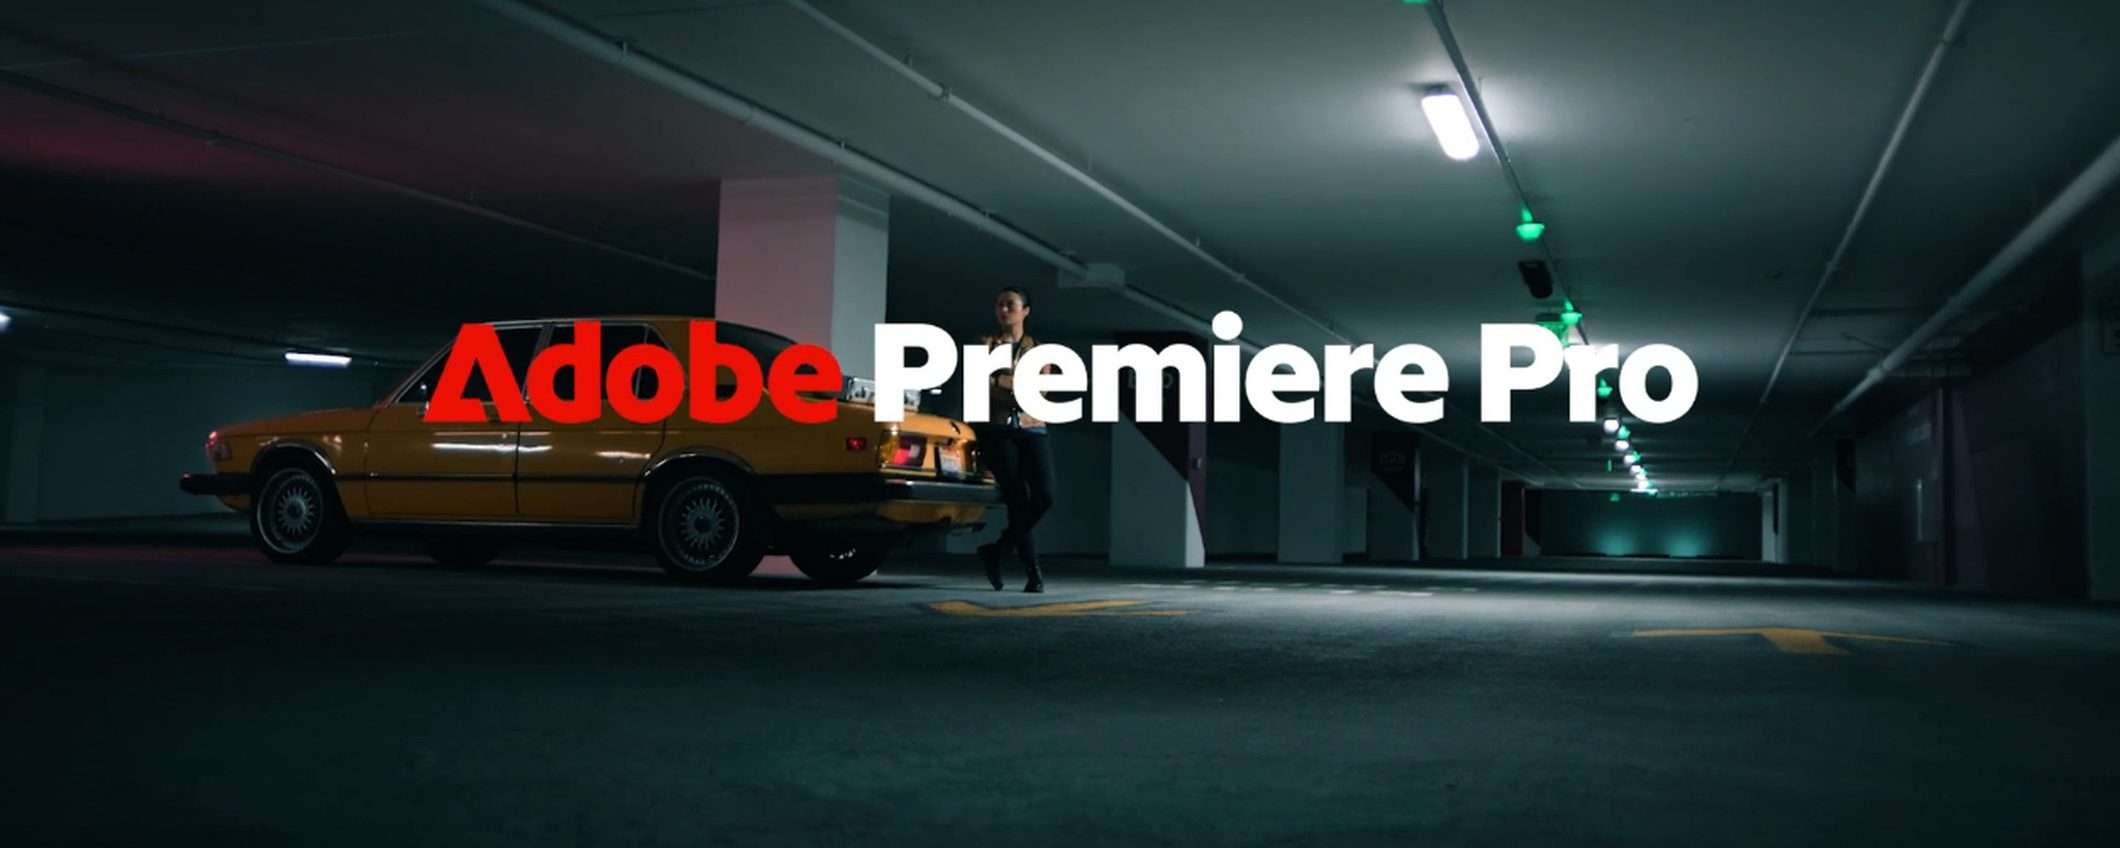 Adobe Premiere Pro: modello Firefly in versione video